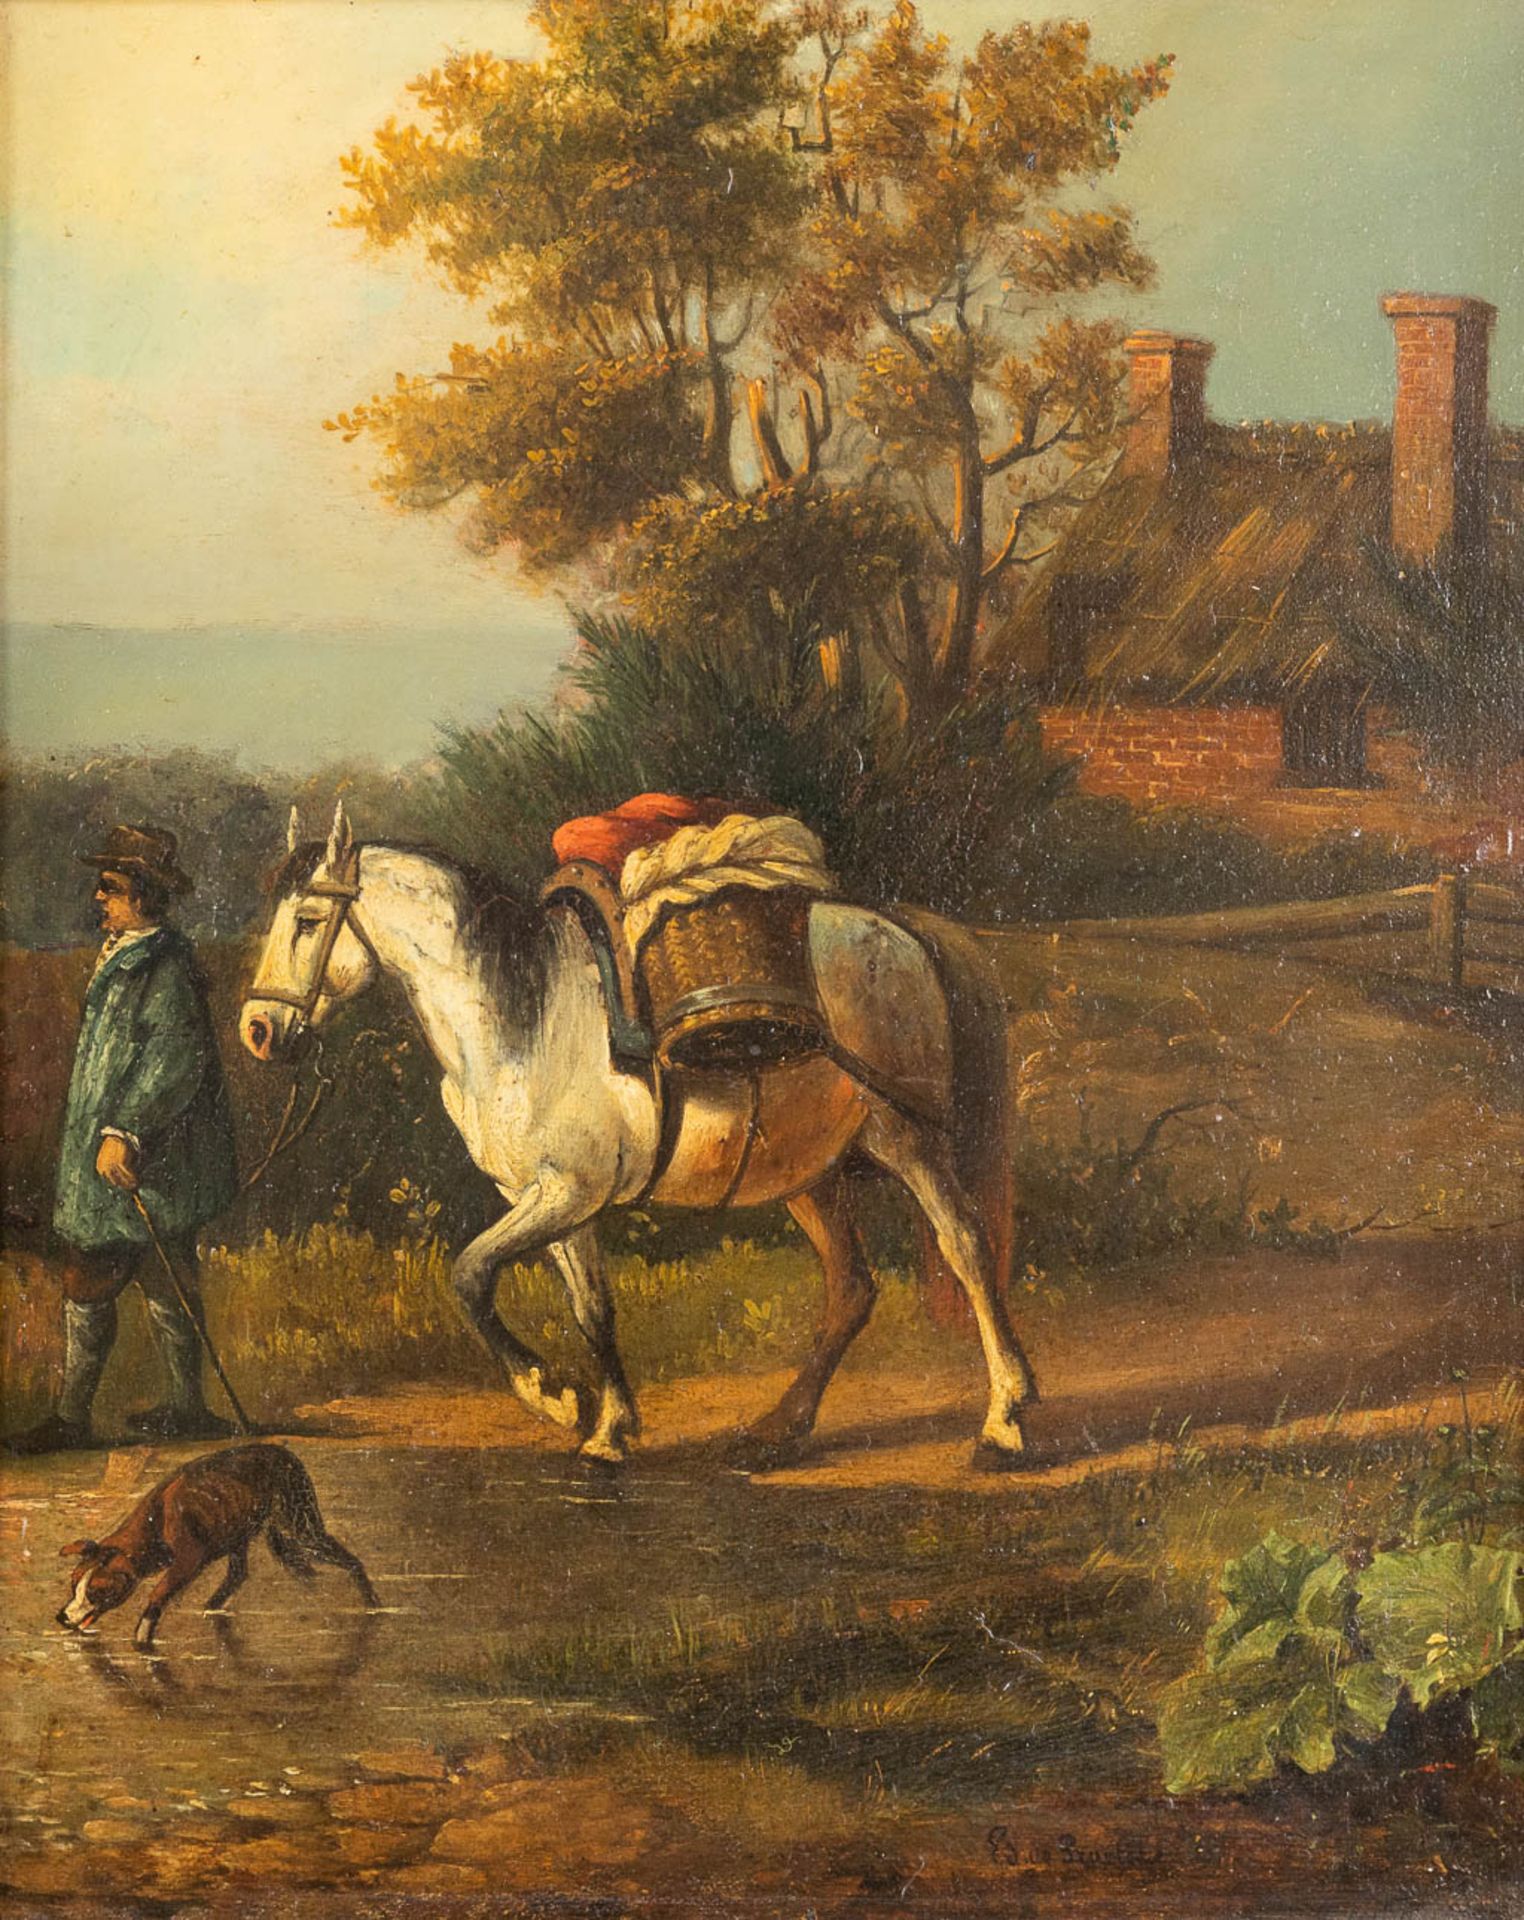 Edmond DE PRATERE (1826-1888) 'Walking a horse' a painting, oil on panel. 19th C. (W:27 x H:33 cm)